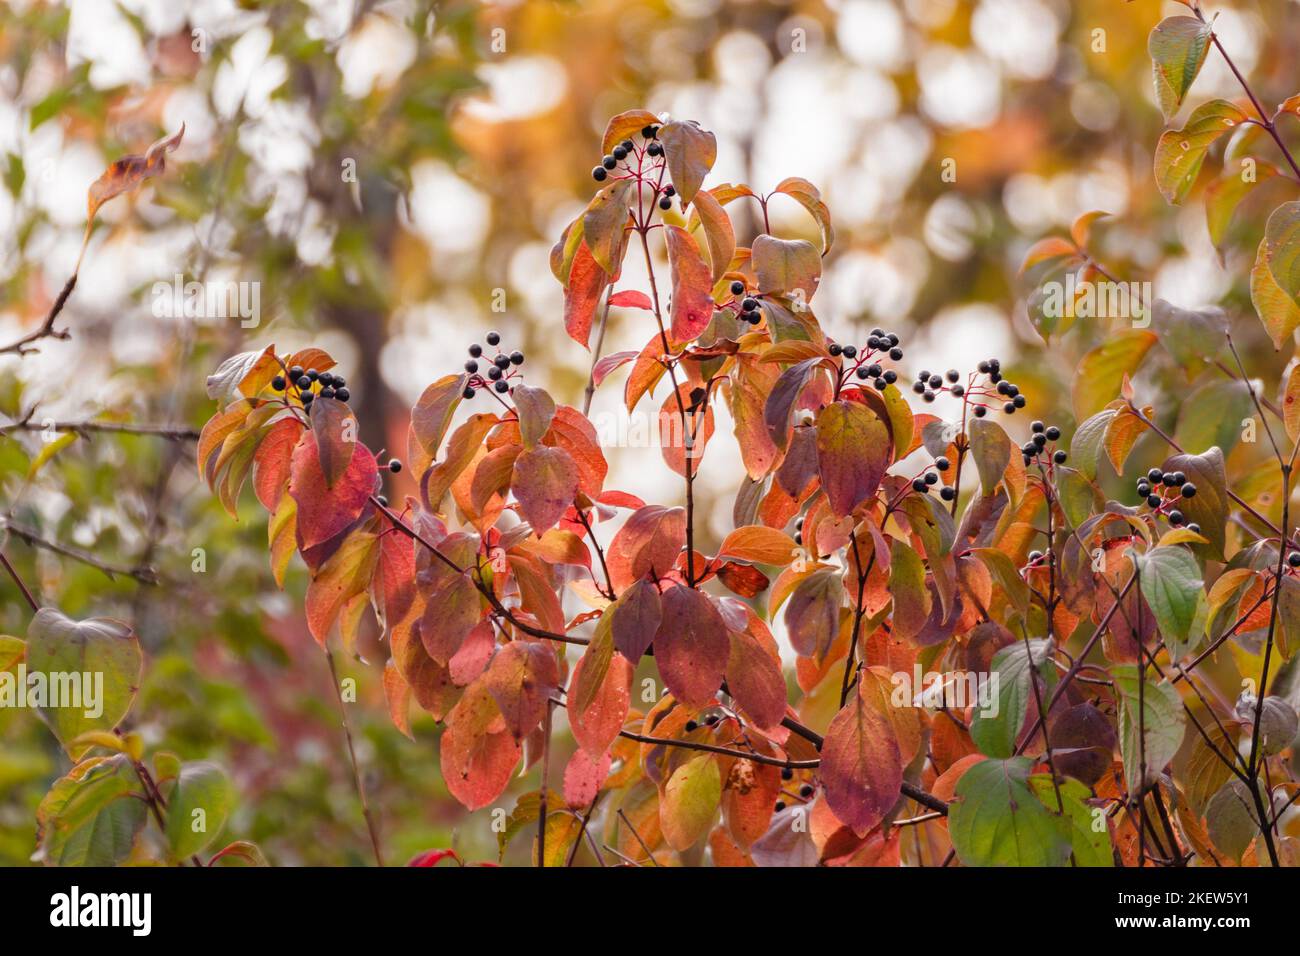 Cornus sanguinea, der gewöhnliche Dogwood Strauch mit schwarzen Beeren und roten Blättern. Herbstbotanik mit verschwommenem Hintergrund Stockfoto